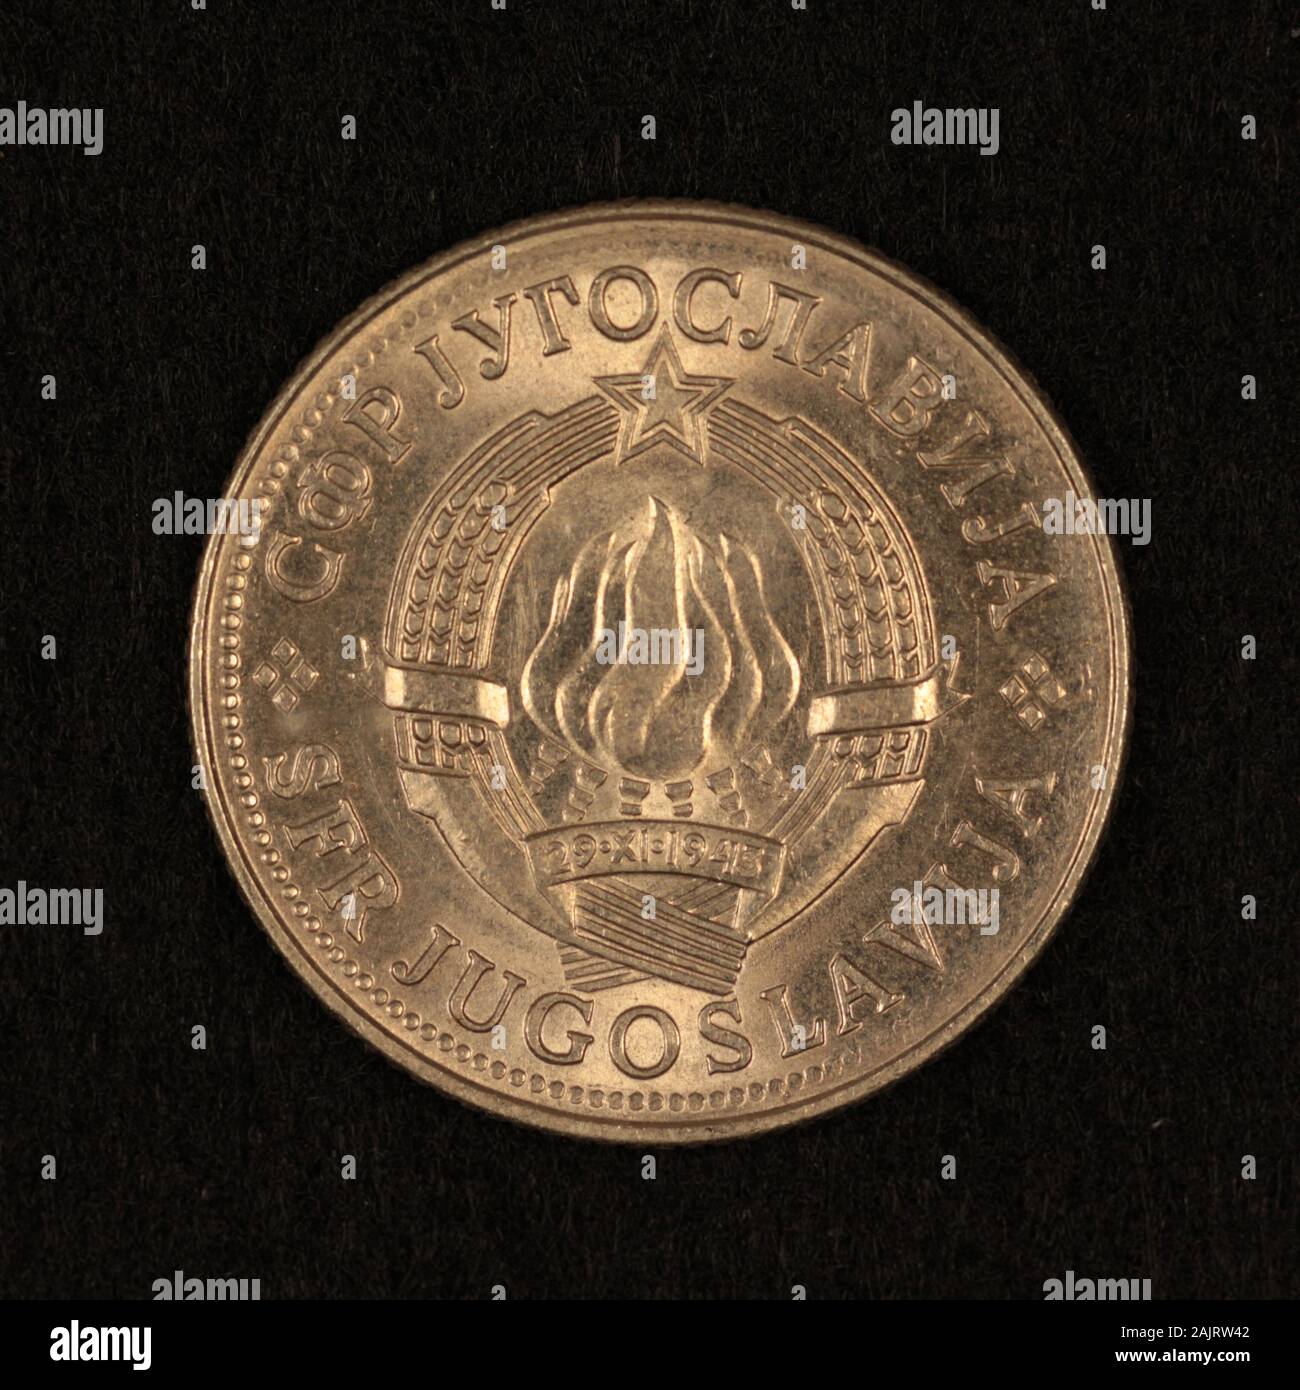 Vorderseite einer ehemaliguen Jugoslawischen 10 Dinar Münze Foto Stock